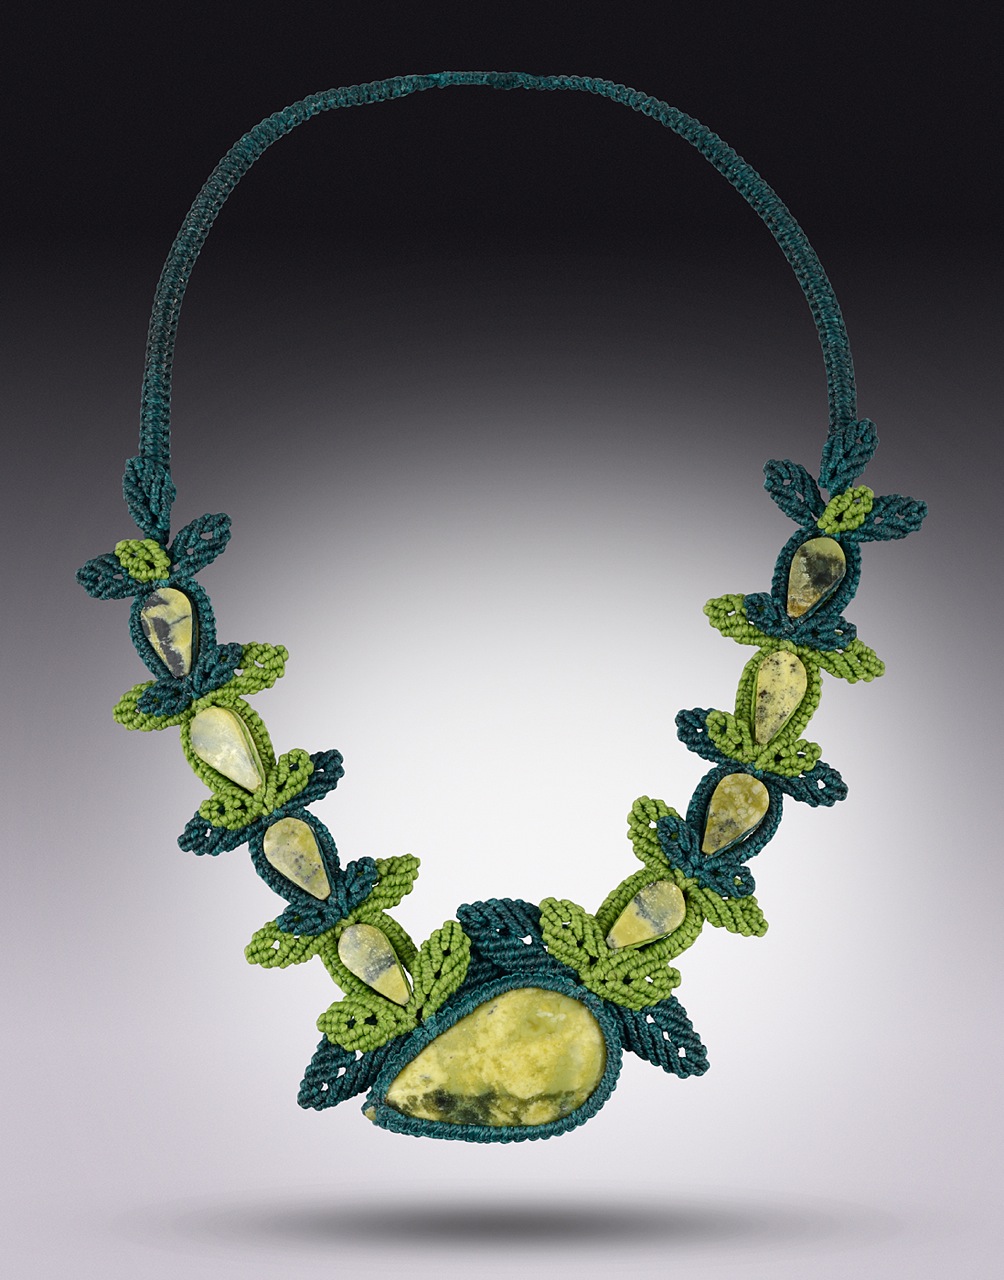 Fiber art jewelry macrame necklace Eterna Verde by Coco Paniora Salinas of Rumi Sumaq rumisumaq.com